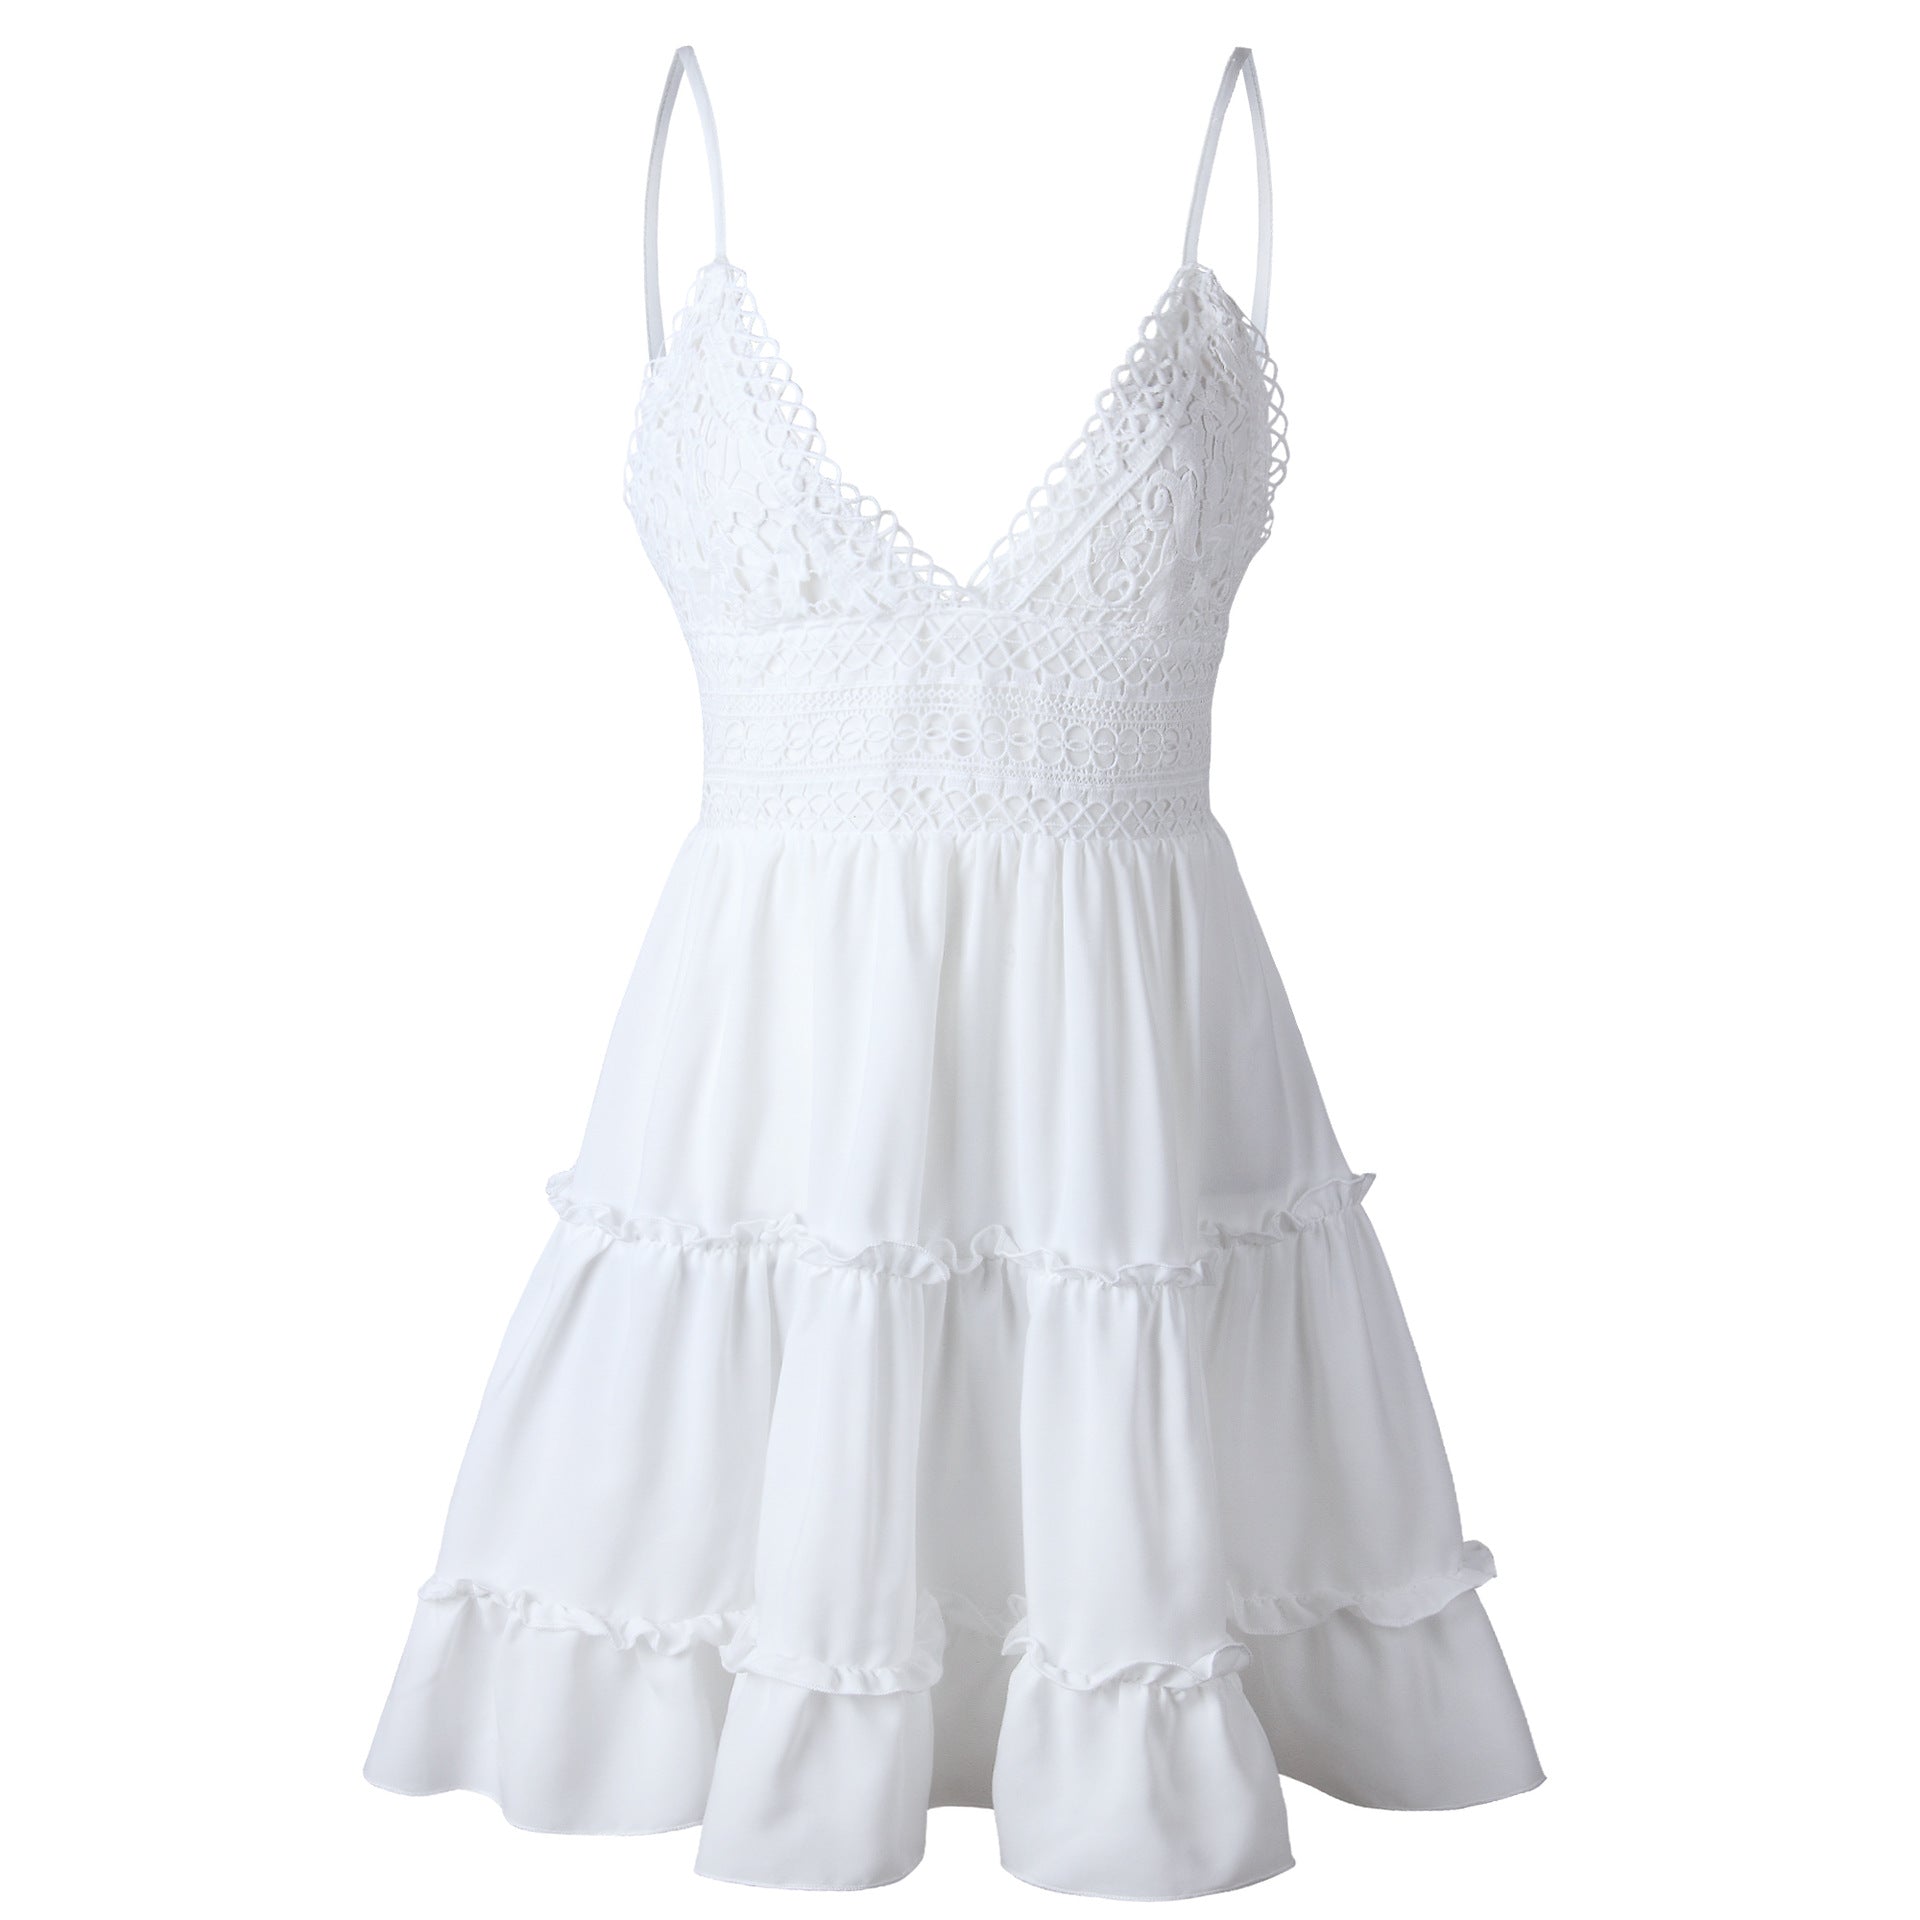 Summer Women's Lace Dress - DromedarShop.com Online Boutique